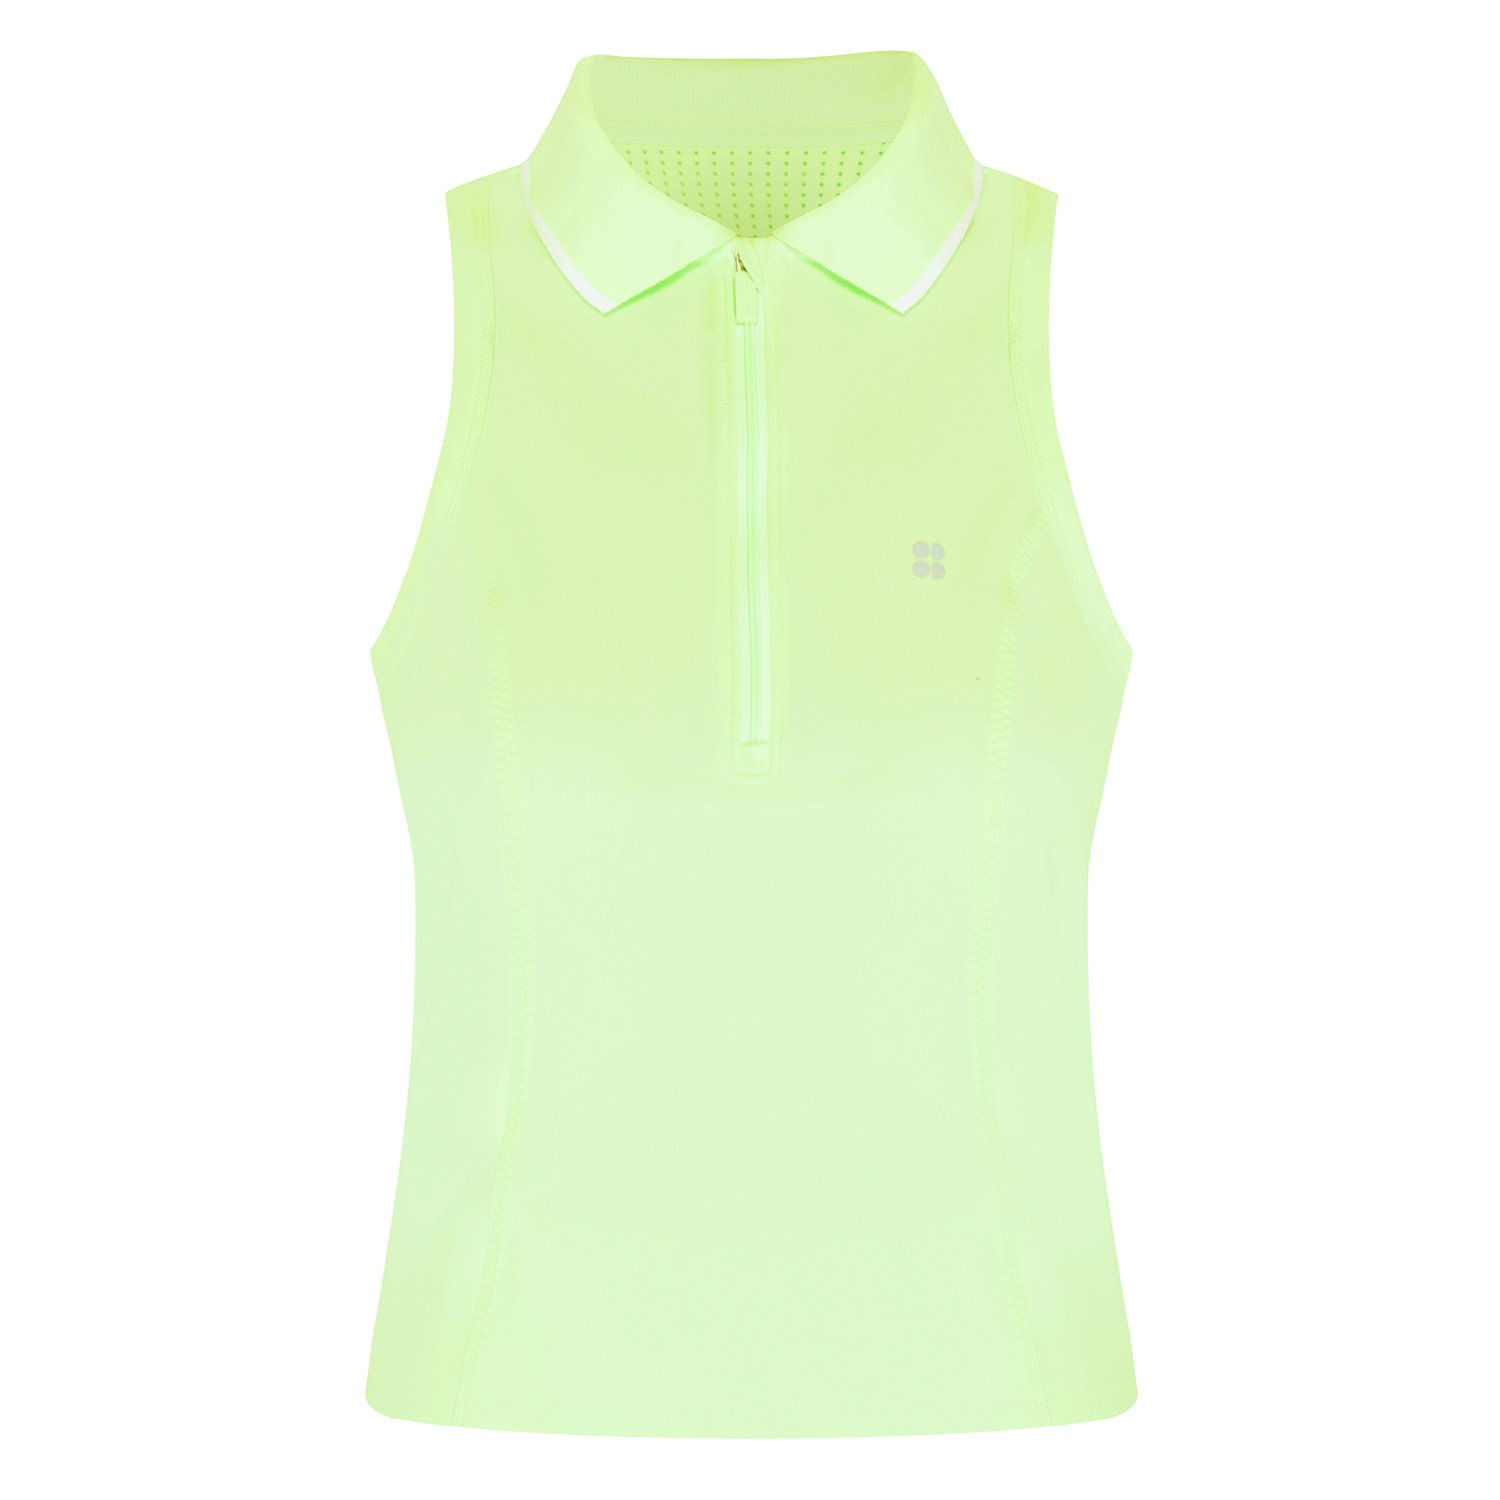 Sweaty Betty Power Kadın Tenis Tişört - Yeşil - 1